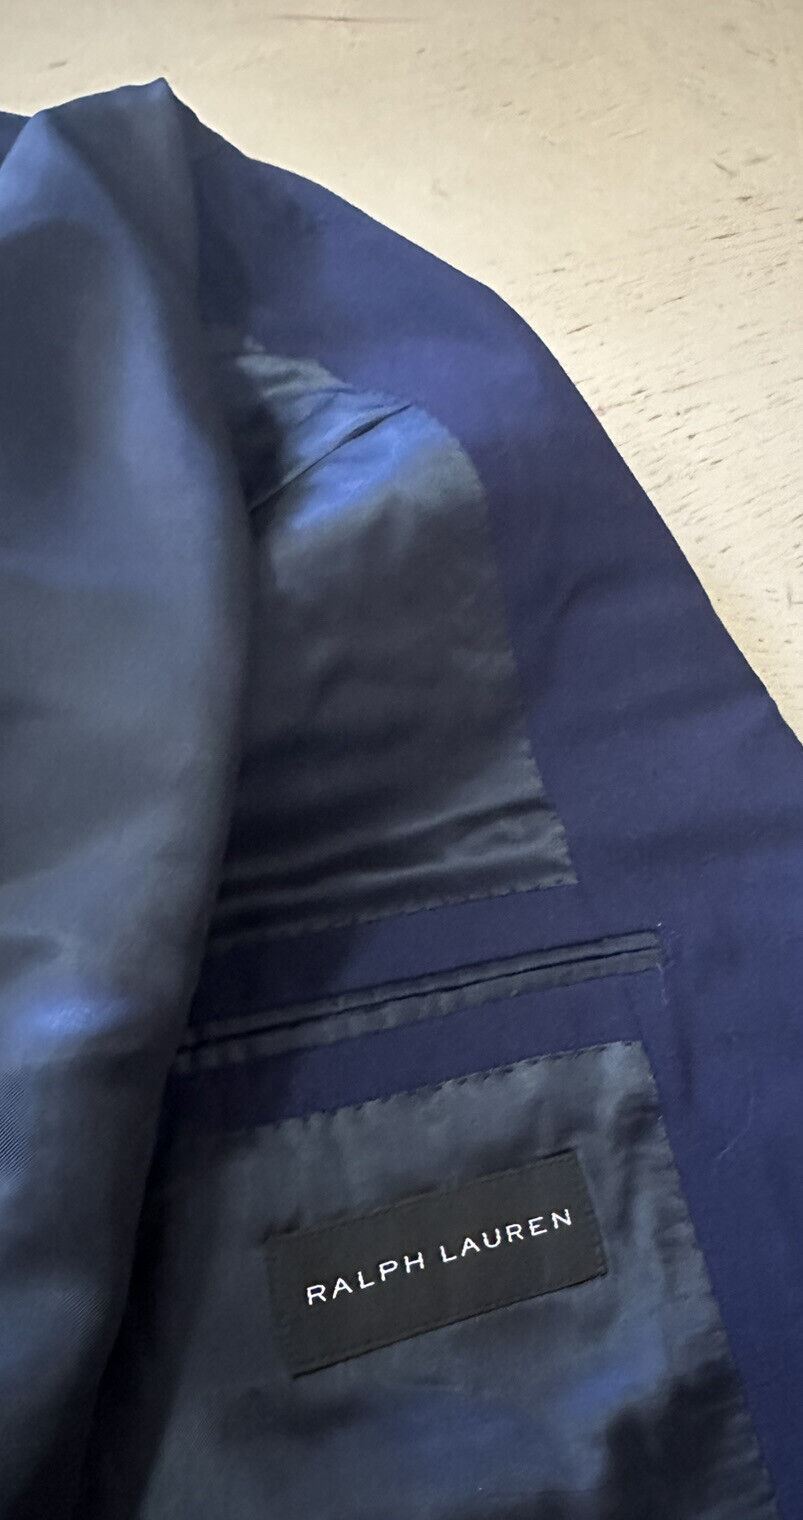 NWT $299 Ralph Lauren Black Label Мужской спортивный пиджак Королевский темно-синий 38S/48S Италия